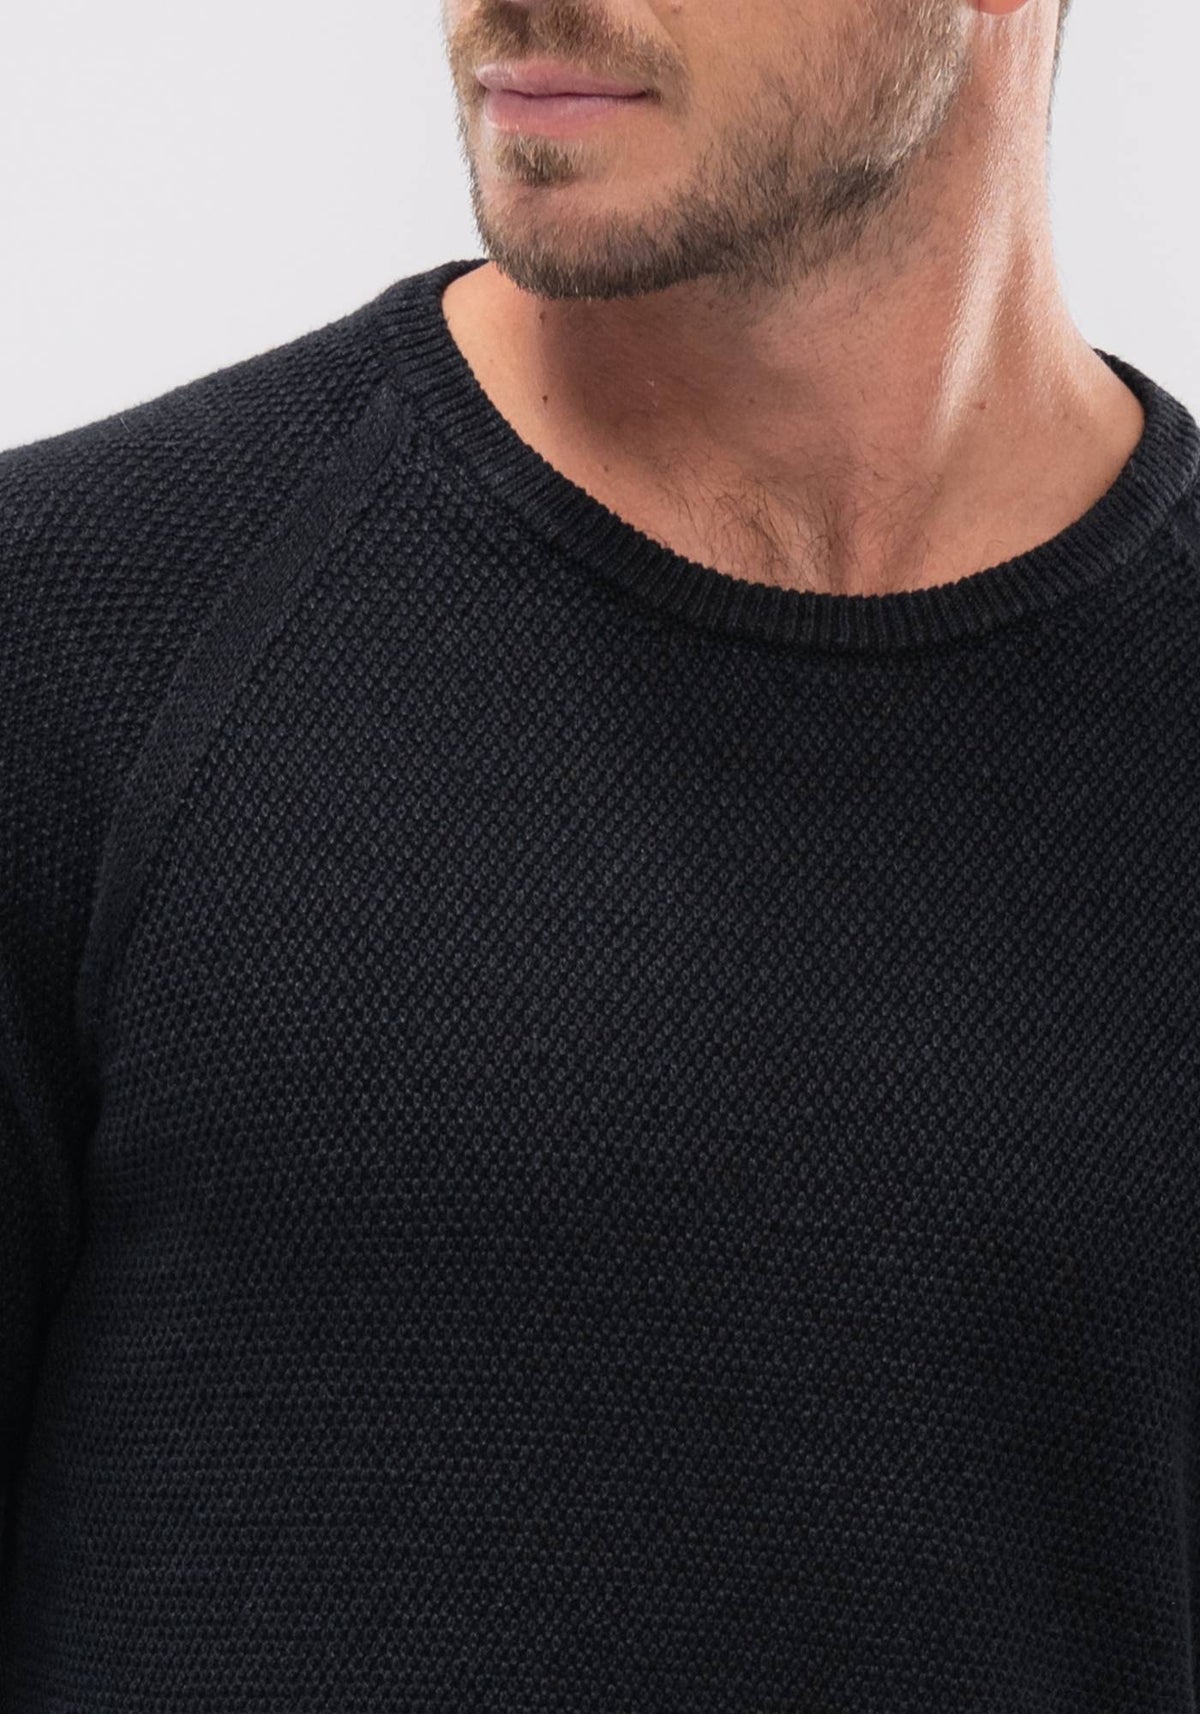 Koa Sweater